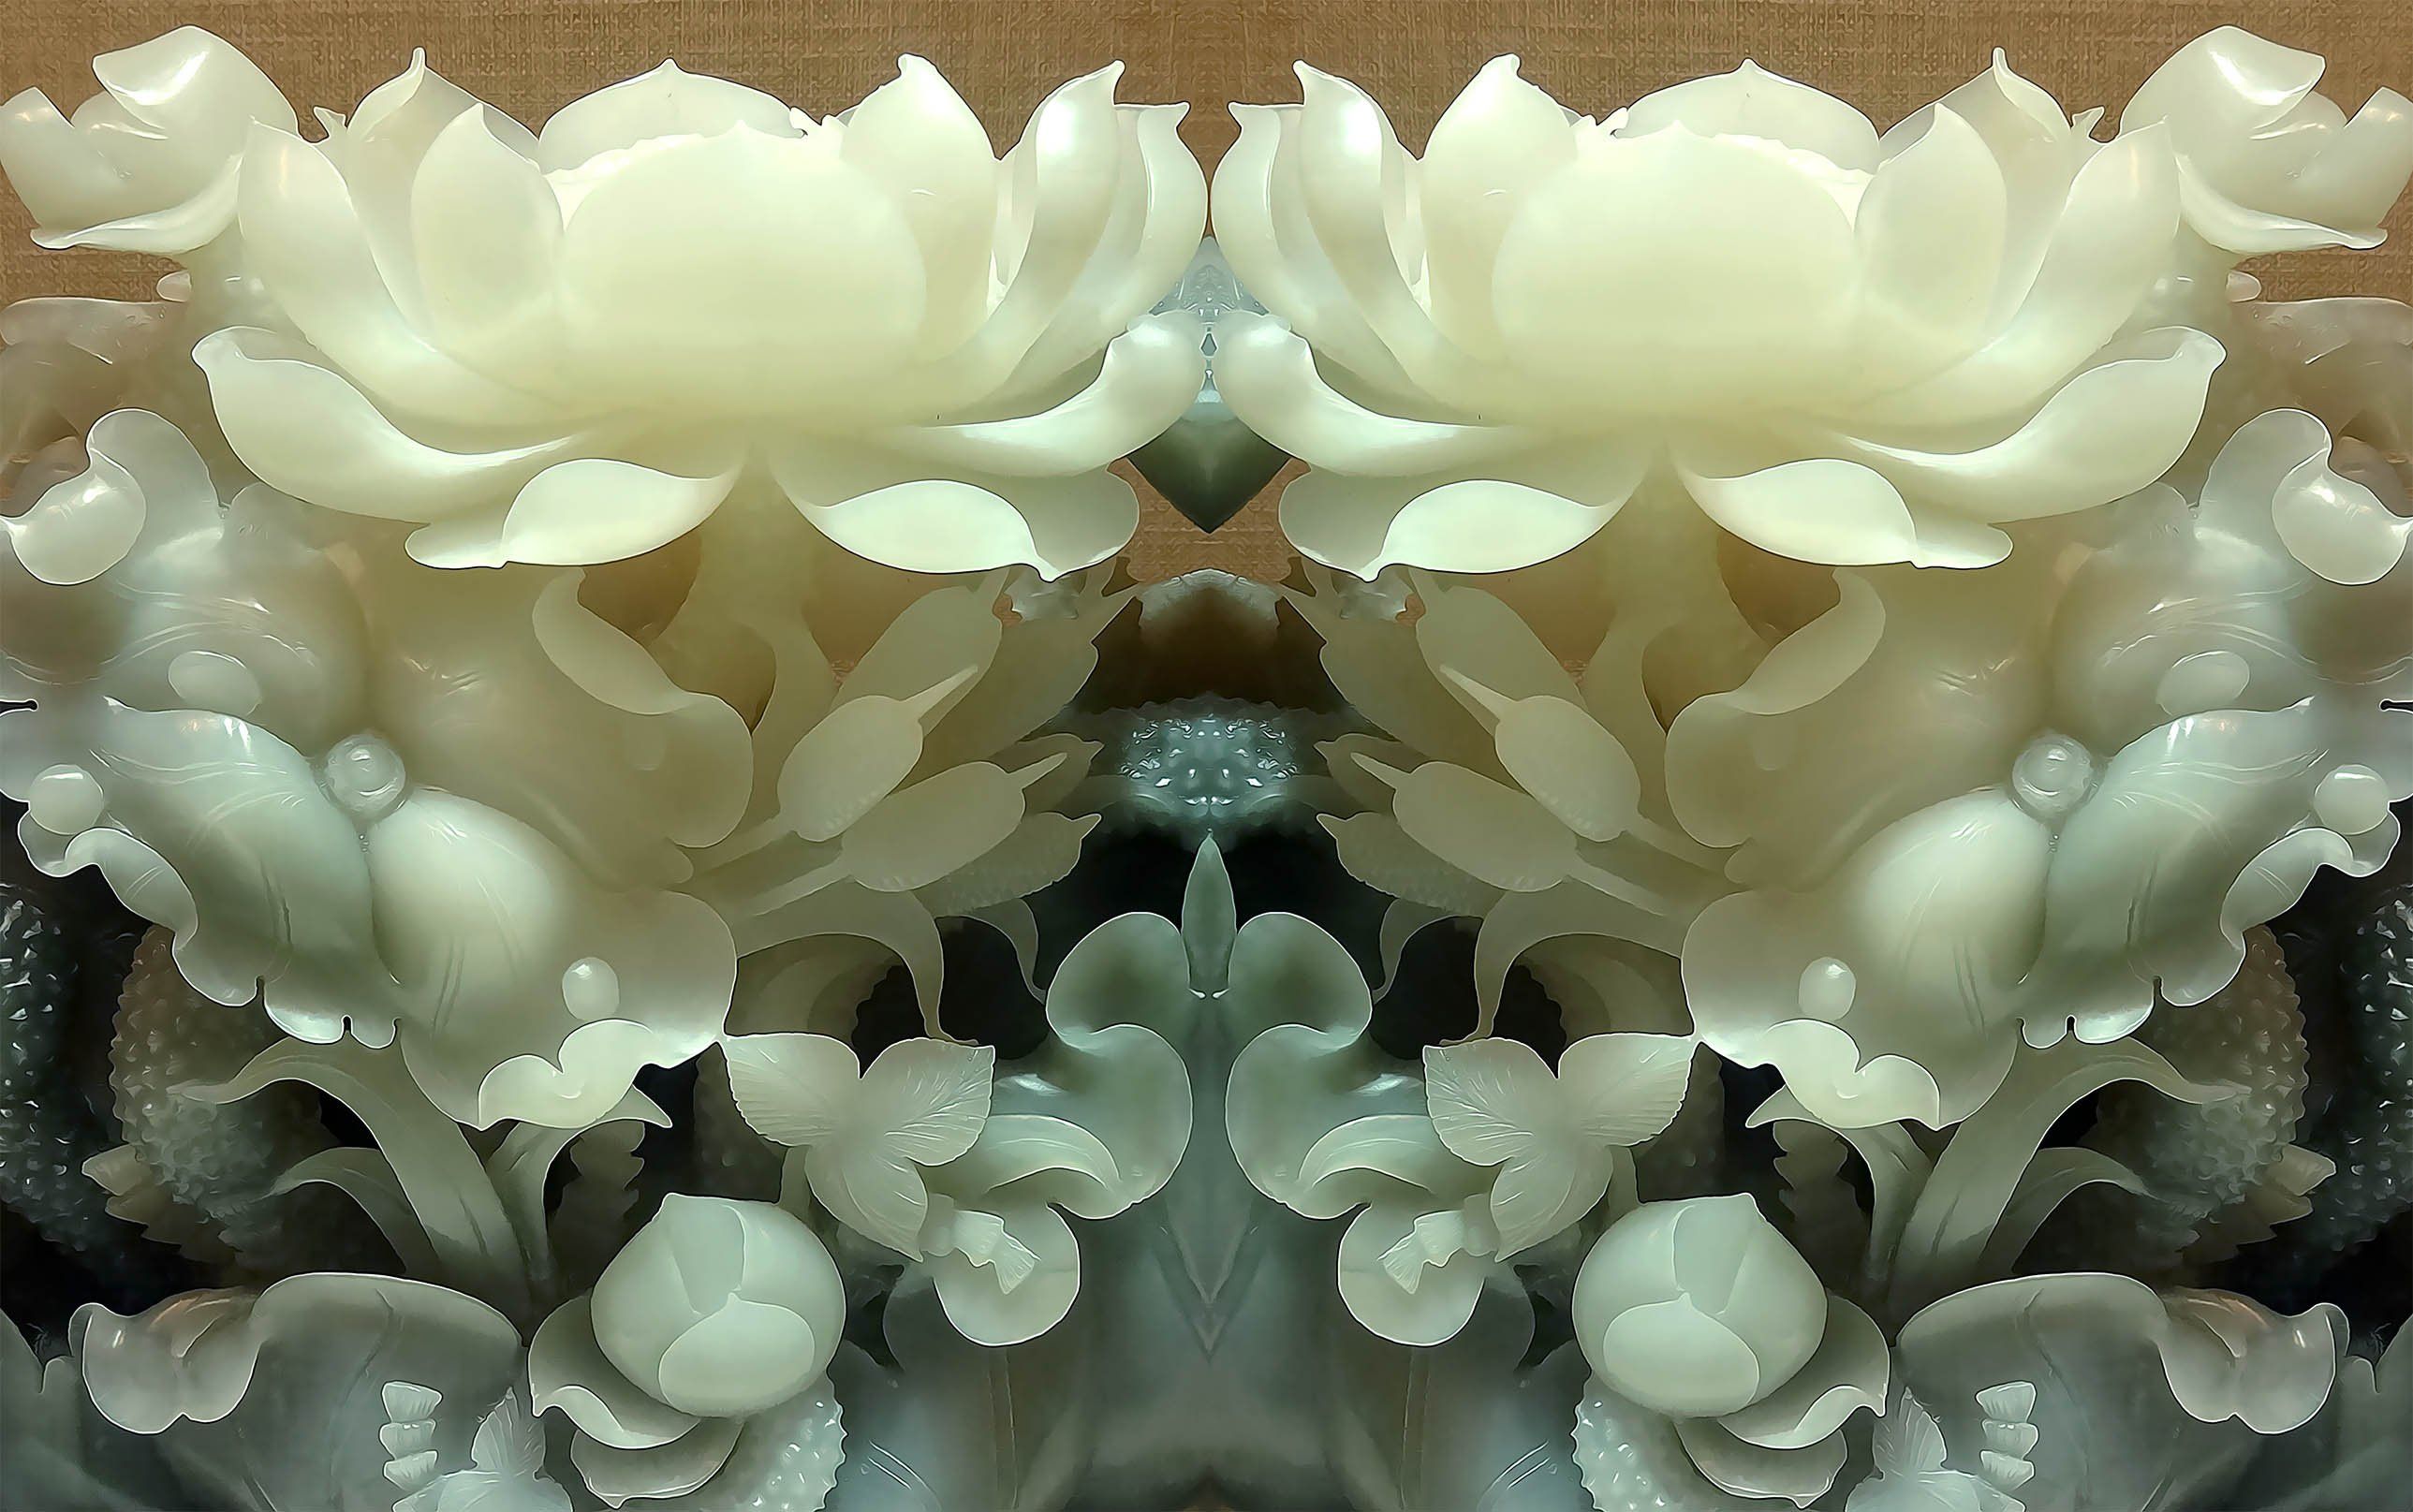 3D Flowers white jade Wallpaper AJ Wallpaper 1 